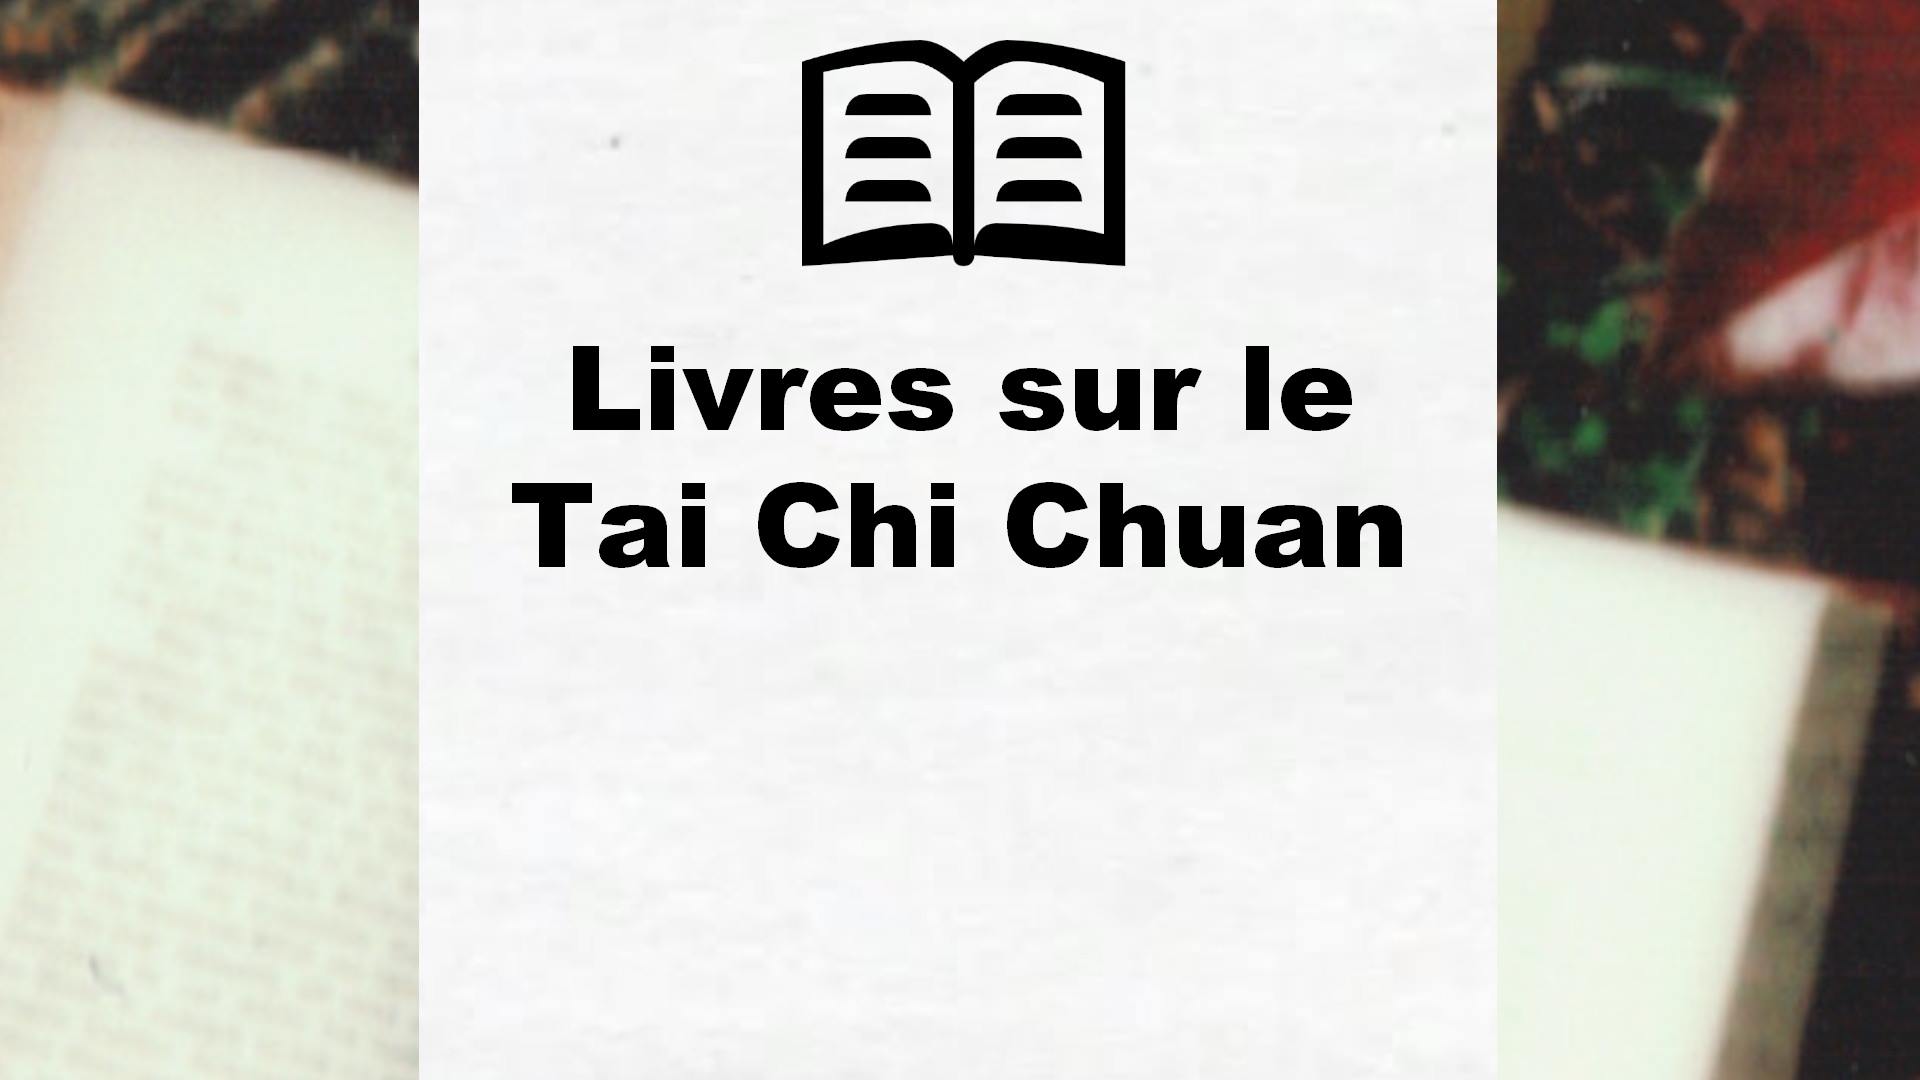 Livres sur le Tai Chi Chuan